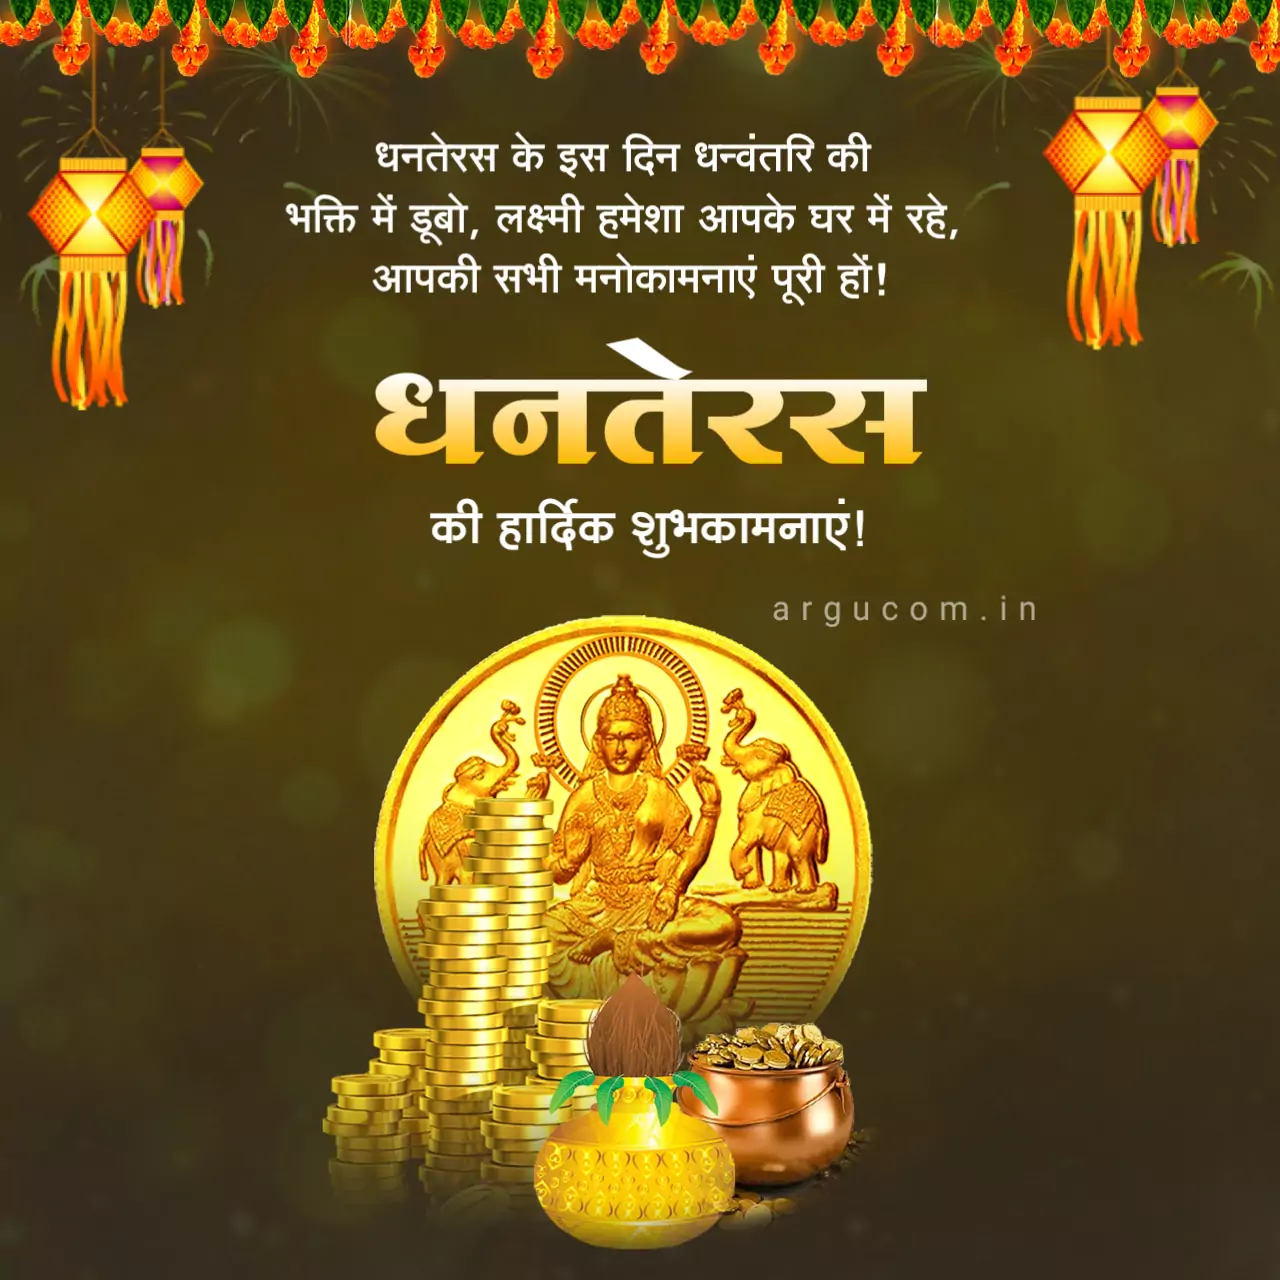 Happy dhanteras image in hindi